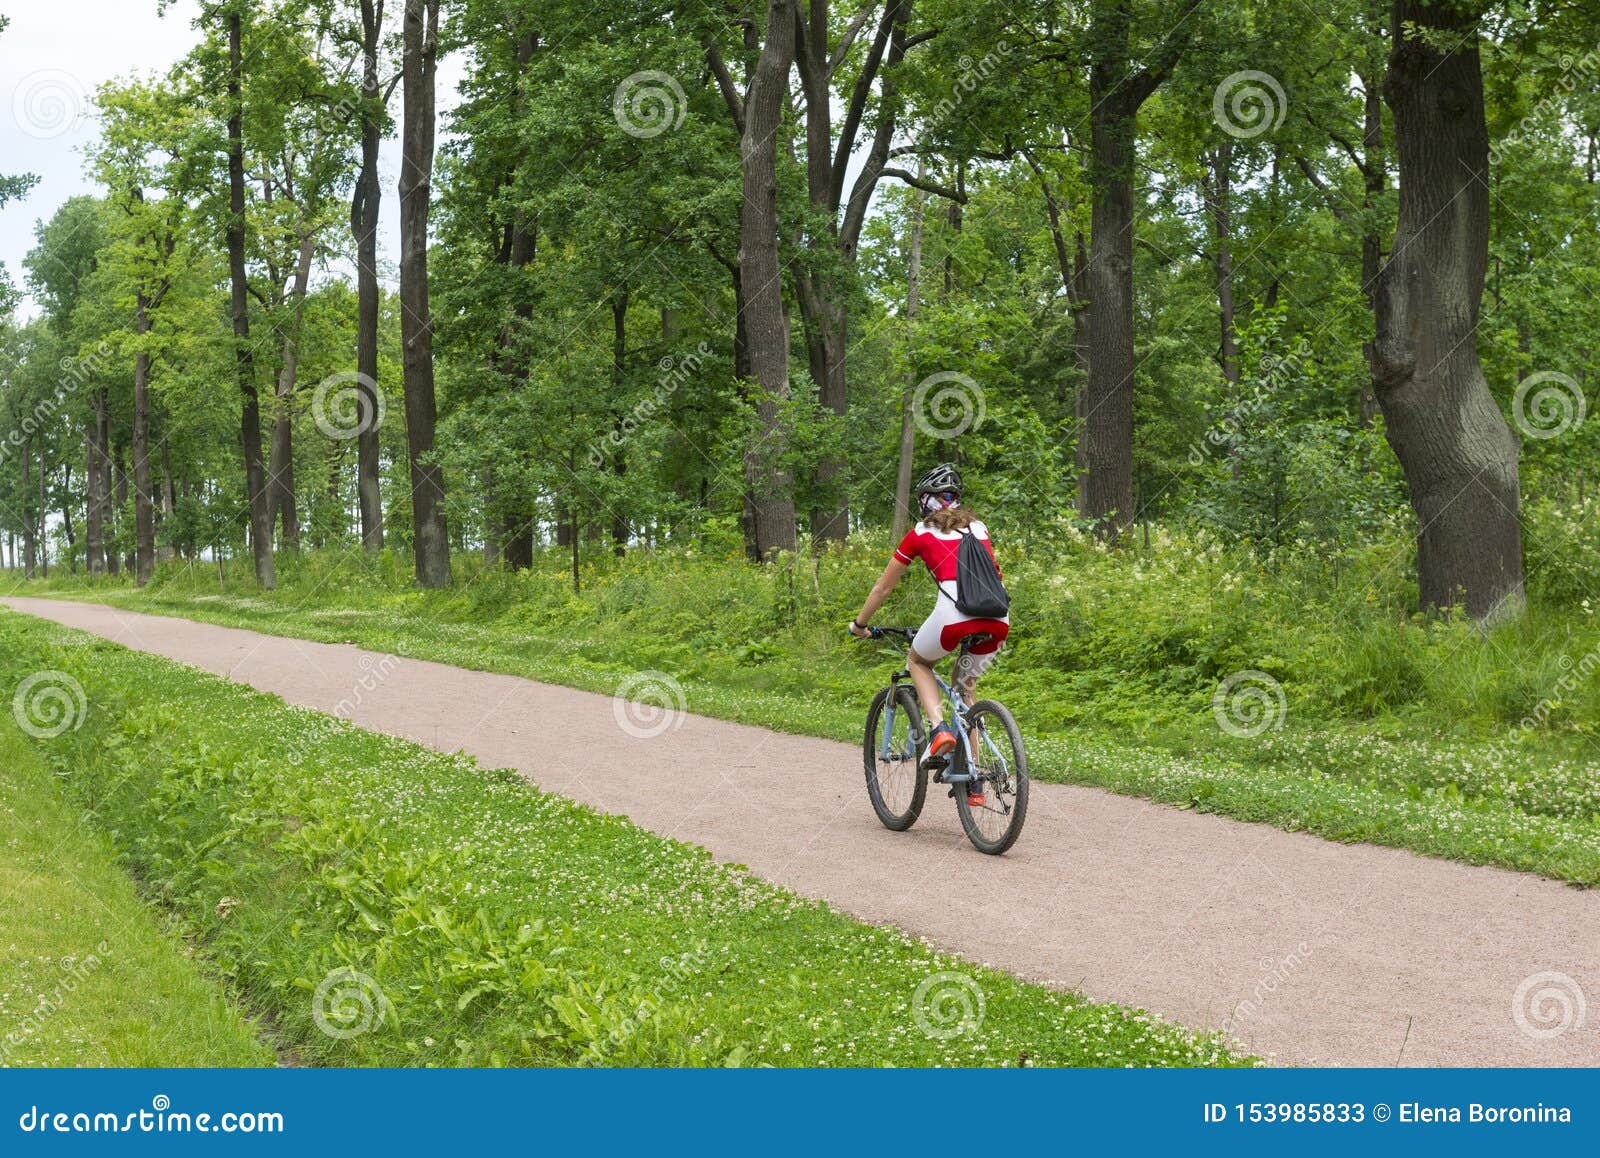 Велосипед ехал по грунтовой дороге